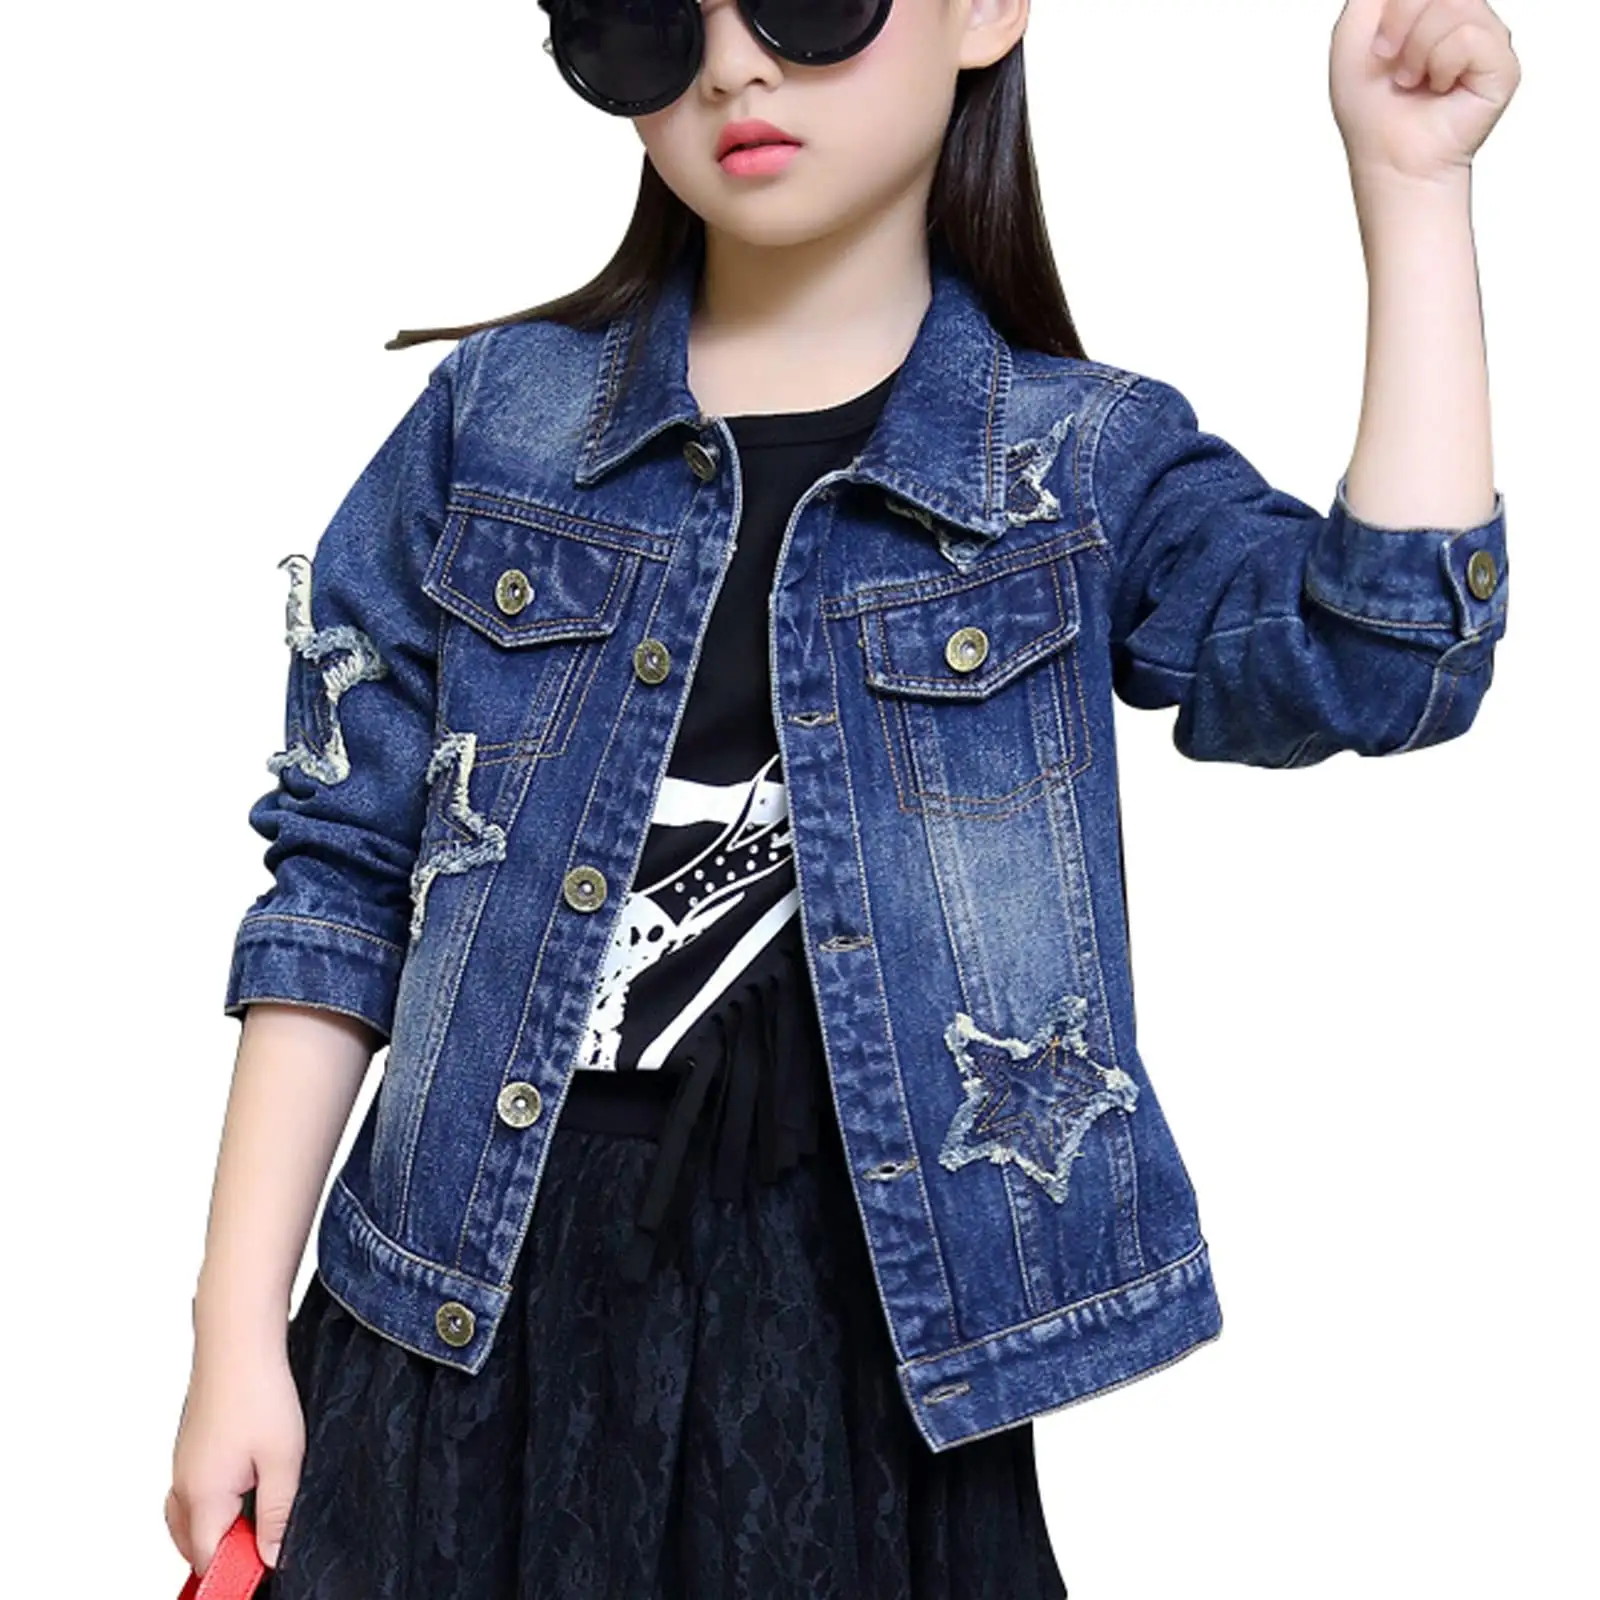 سترة جينز خريفي للأطفال، ملابس أطفال، معطف جينز نقش نجوم، أزياء الفتيات، معطف جينز أطفال